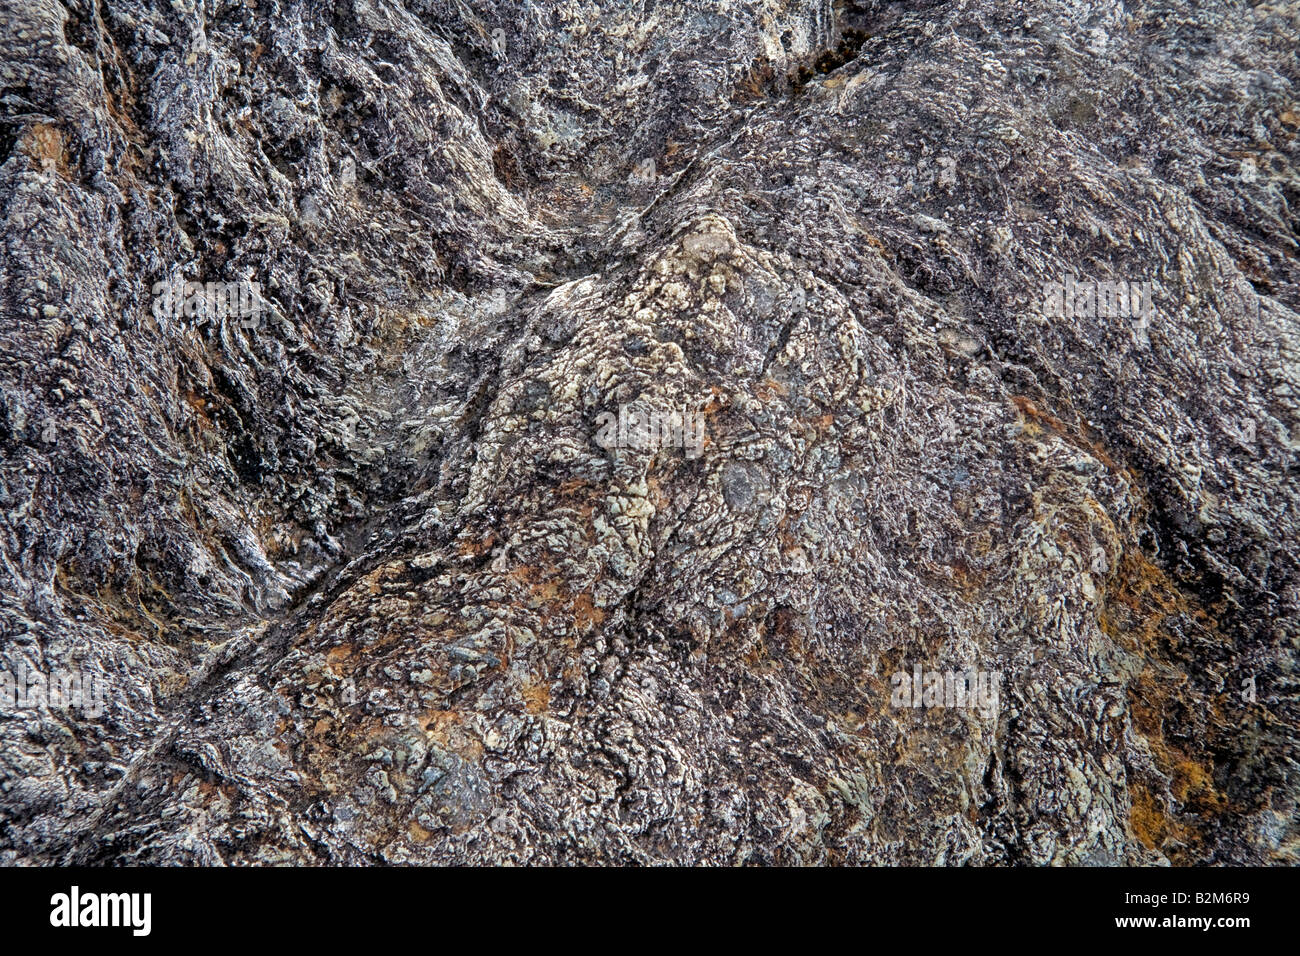 Vergrößerte Ansicht des schwarzen Marmor Faltungen - Croagh Patrick - Mayo - Irland Stockfoto